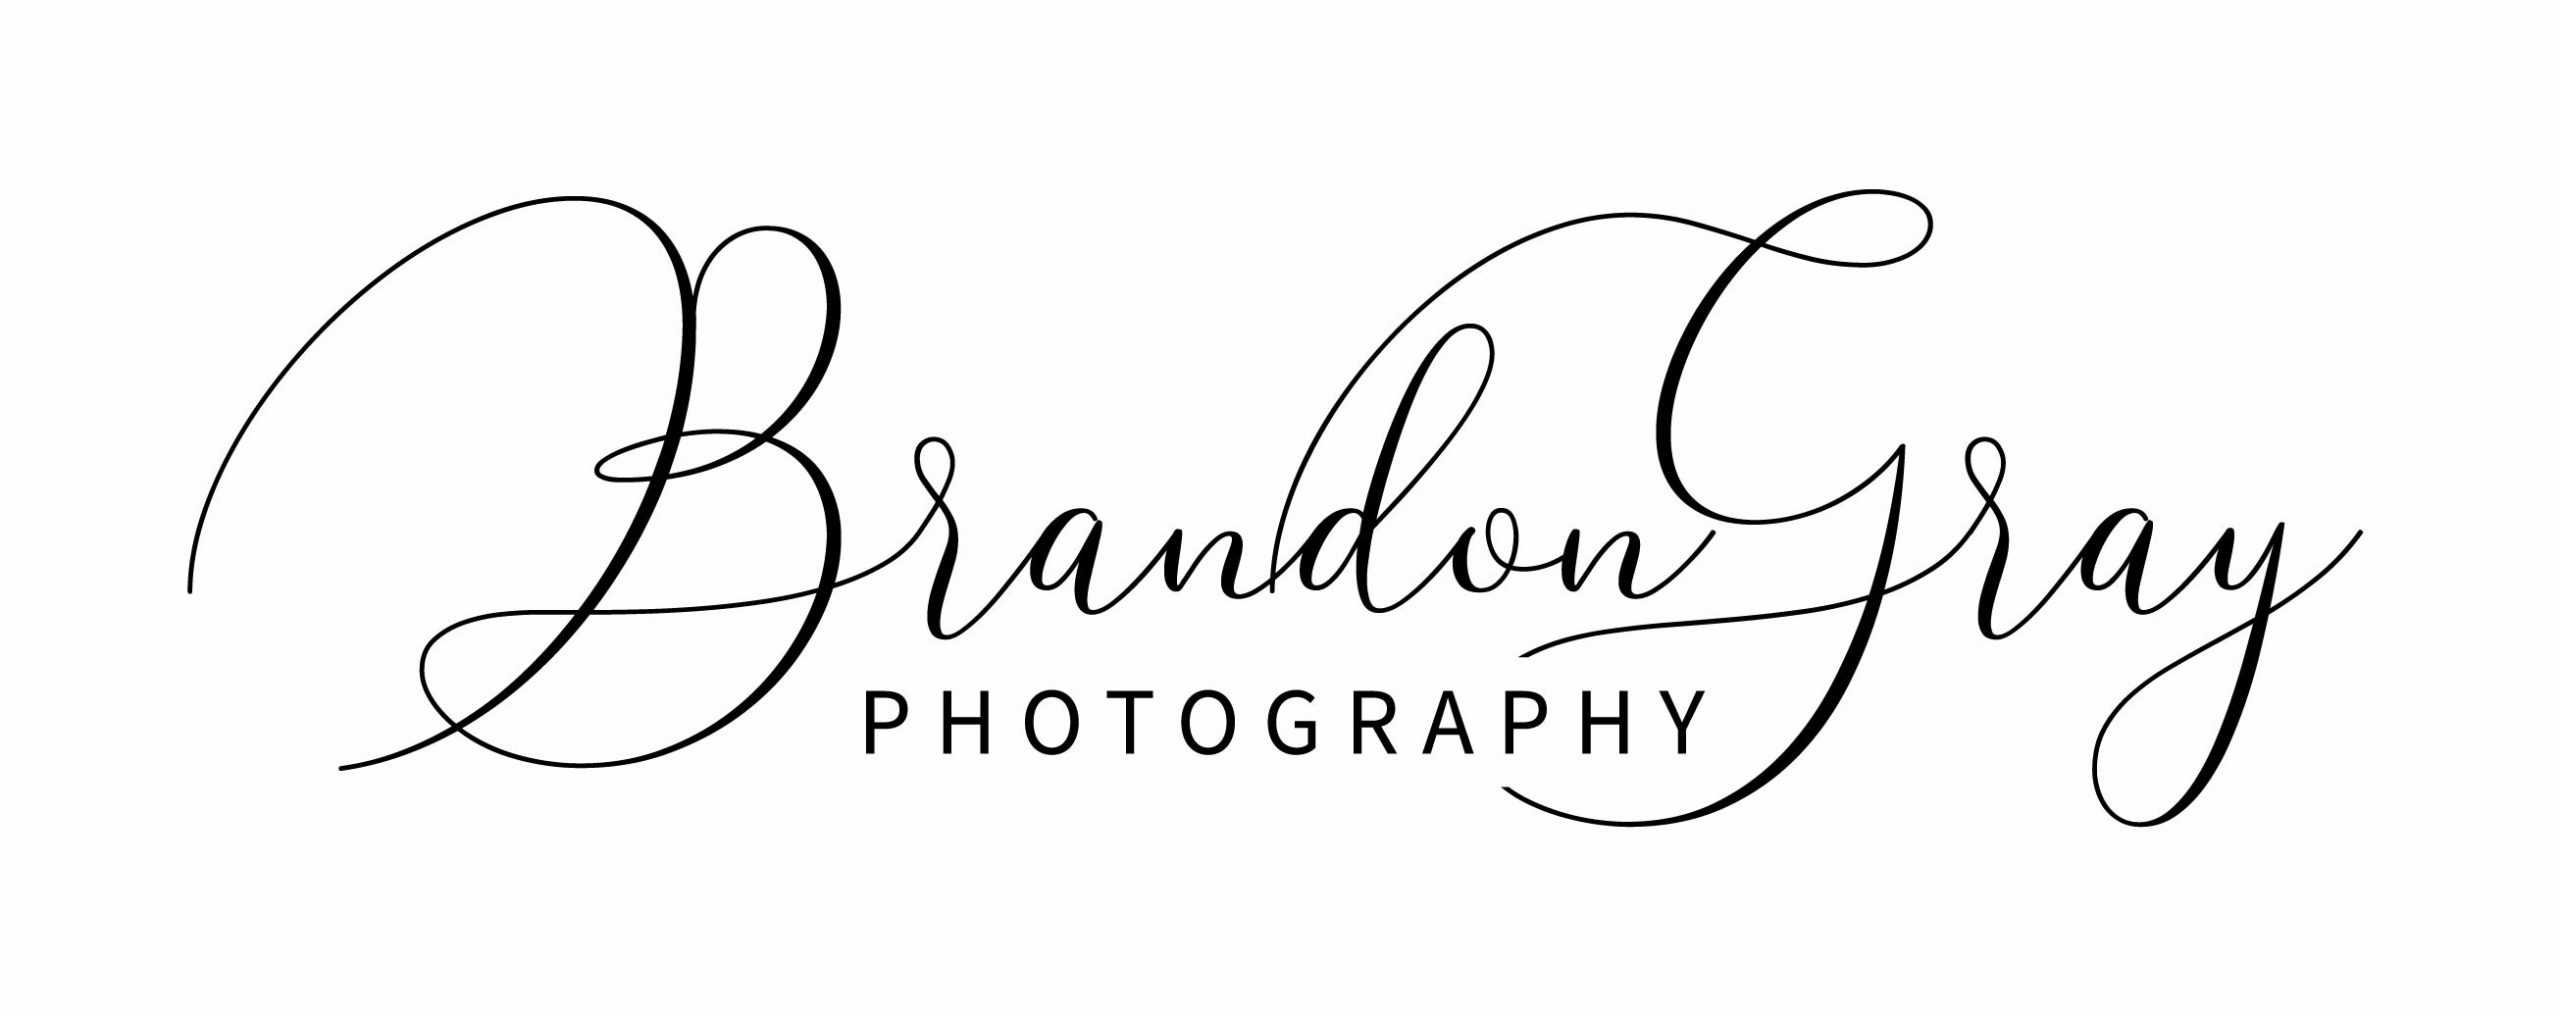 Logodesign Brandon Gray